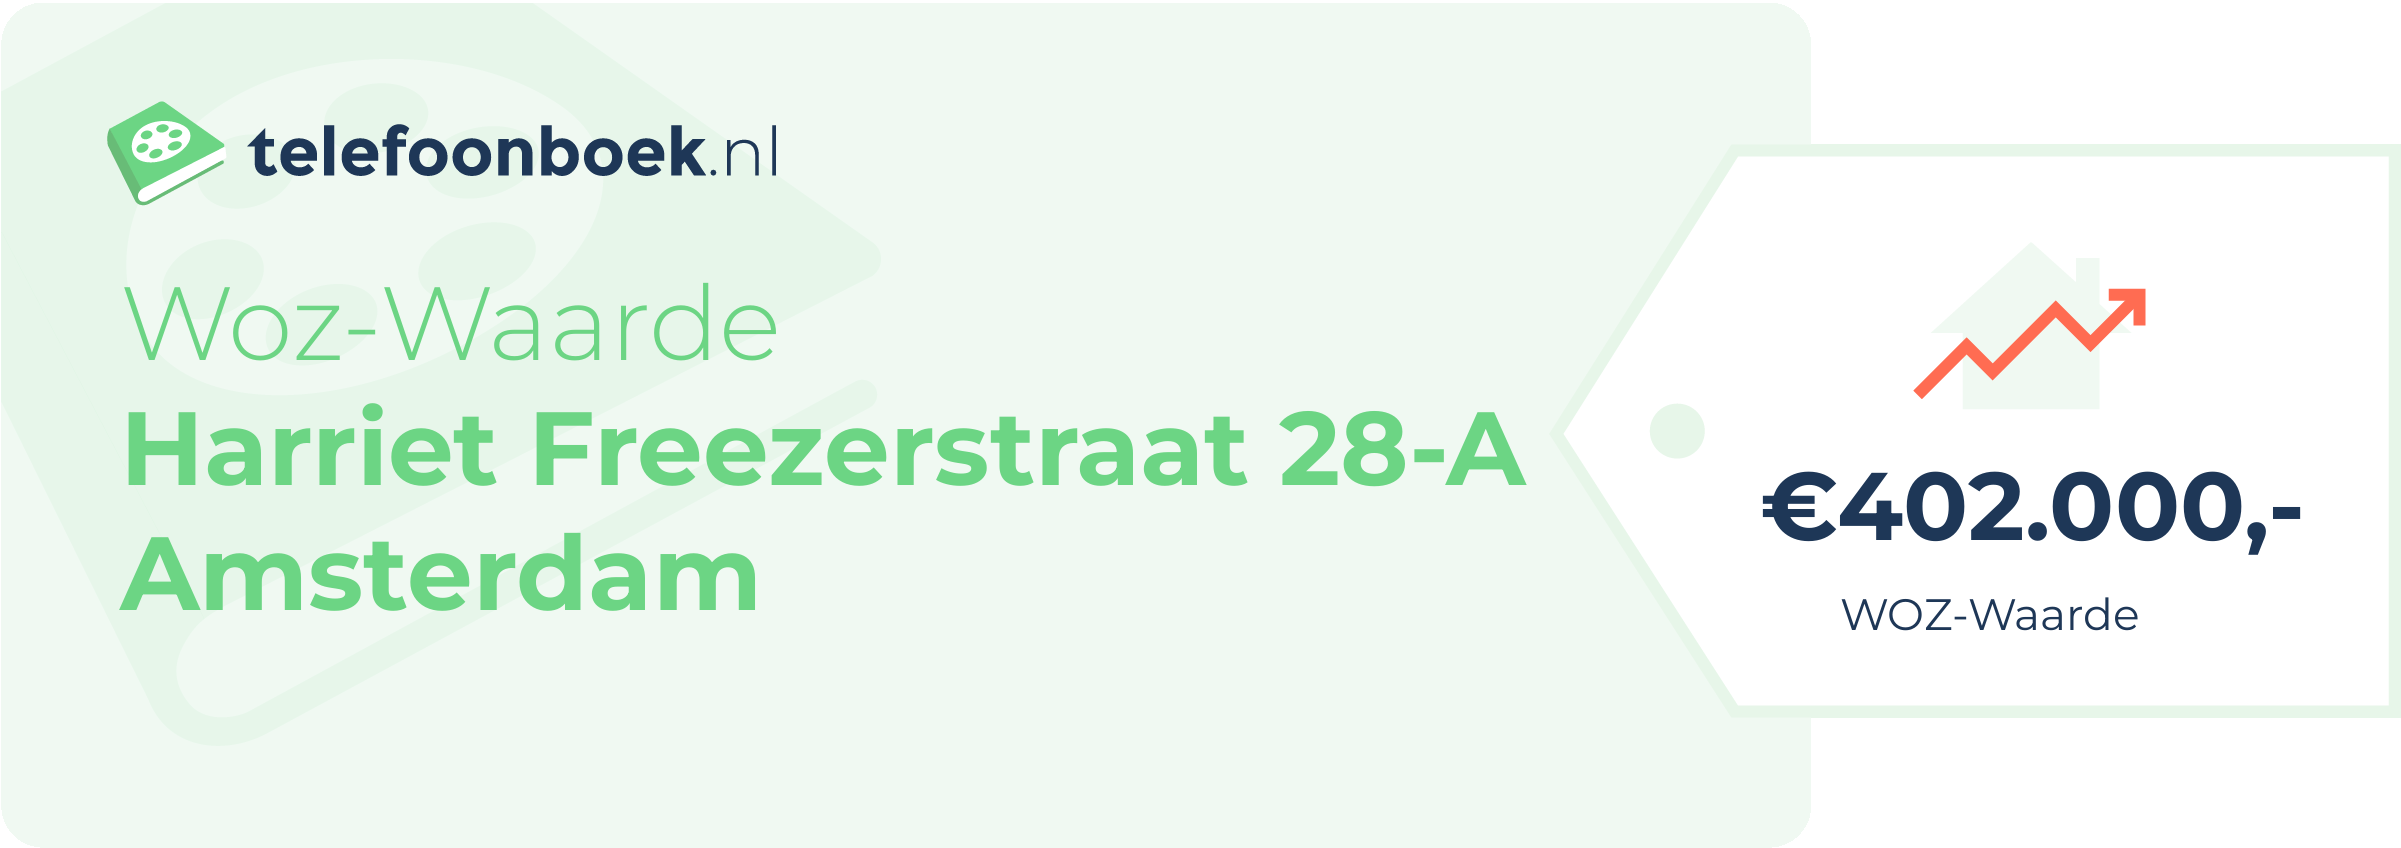 WOZ-waarde Harriet Freezerstraat 28-A Amsterdam